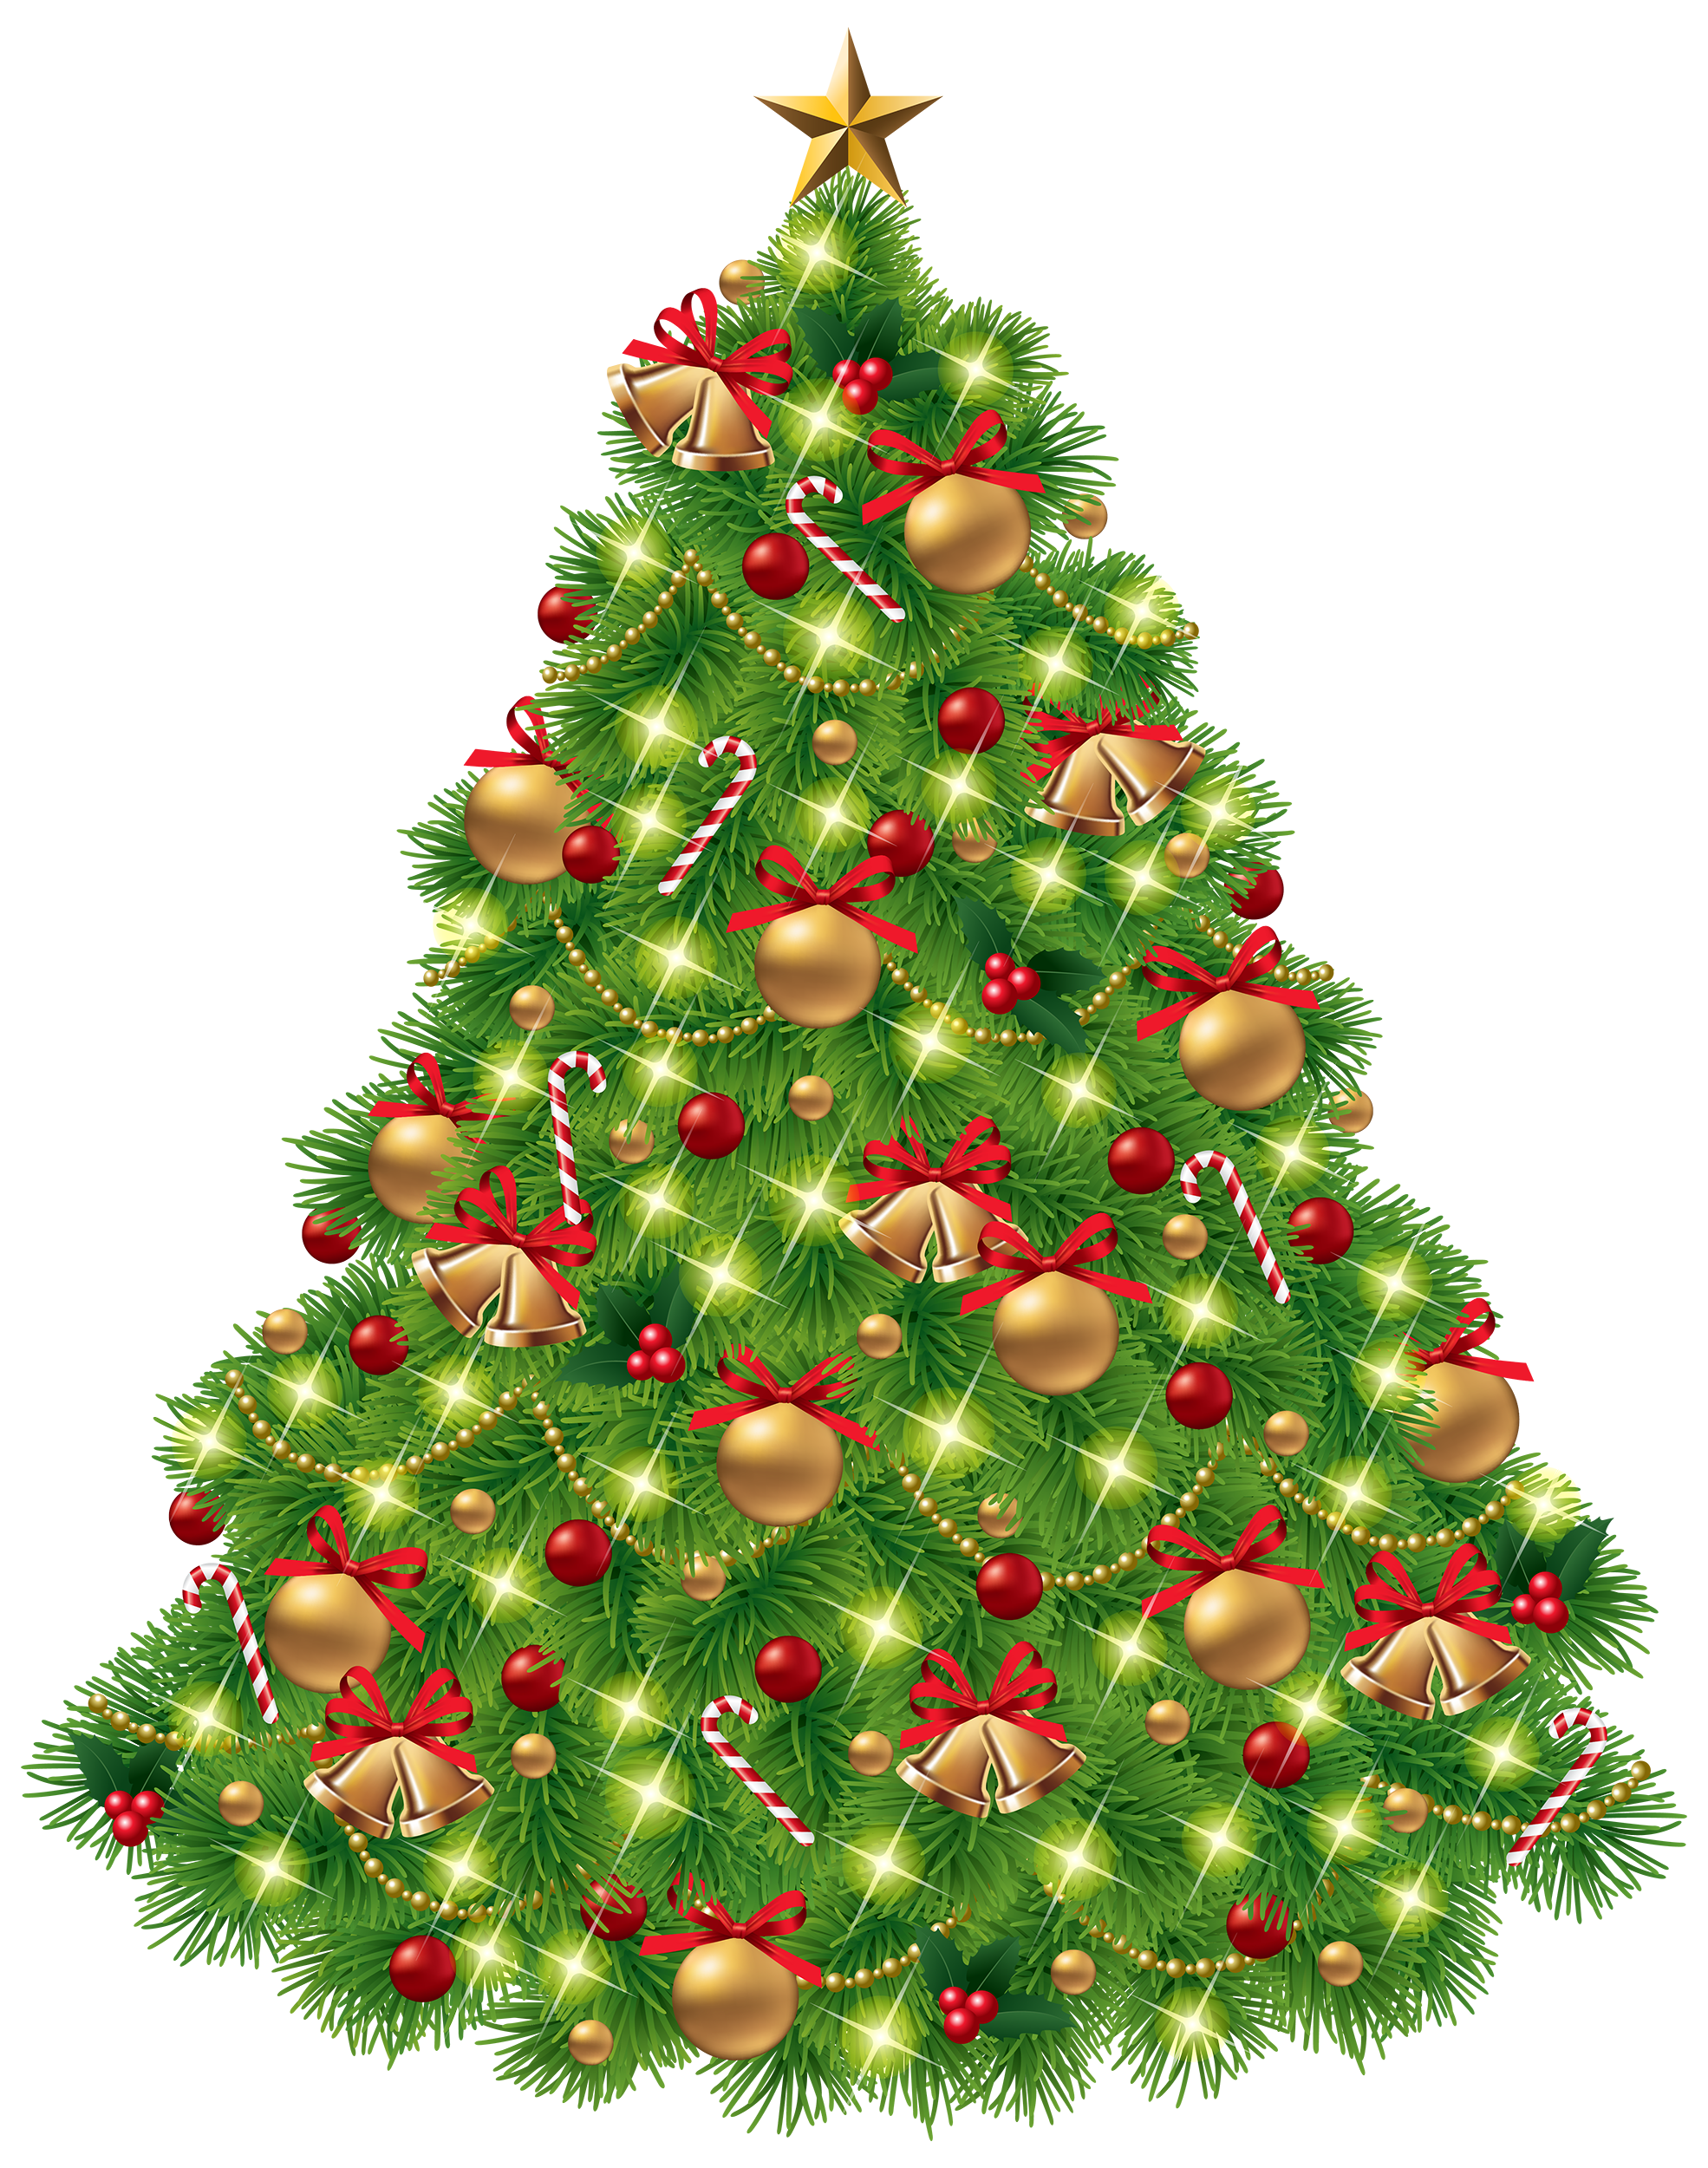 Fir Tree Christmas HQ Image Free PNG Image